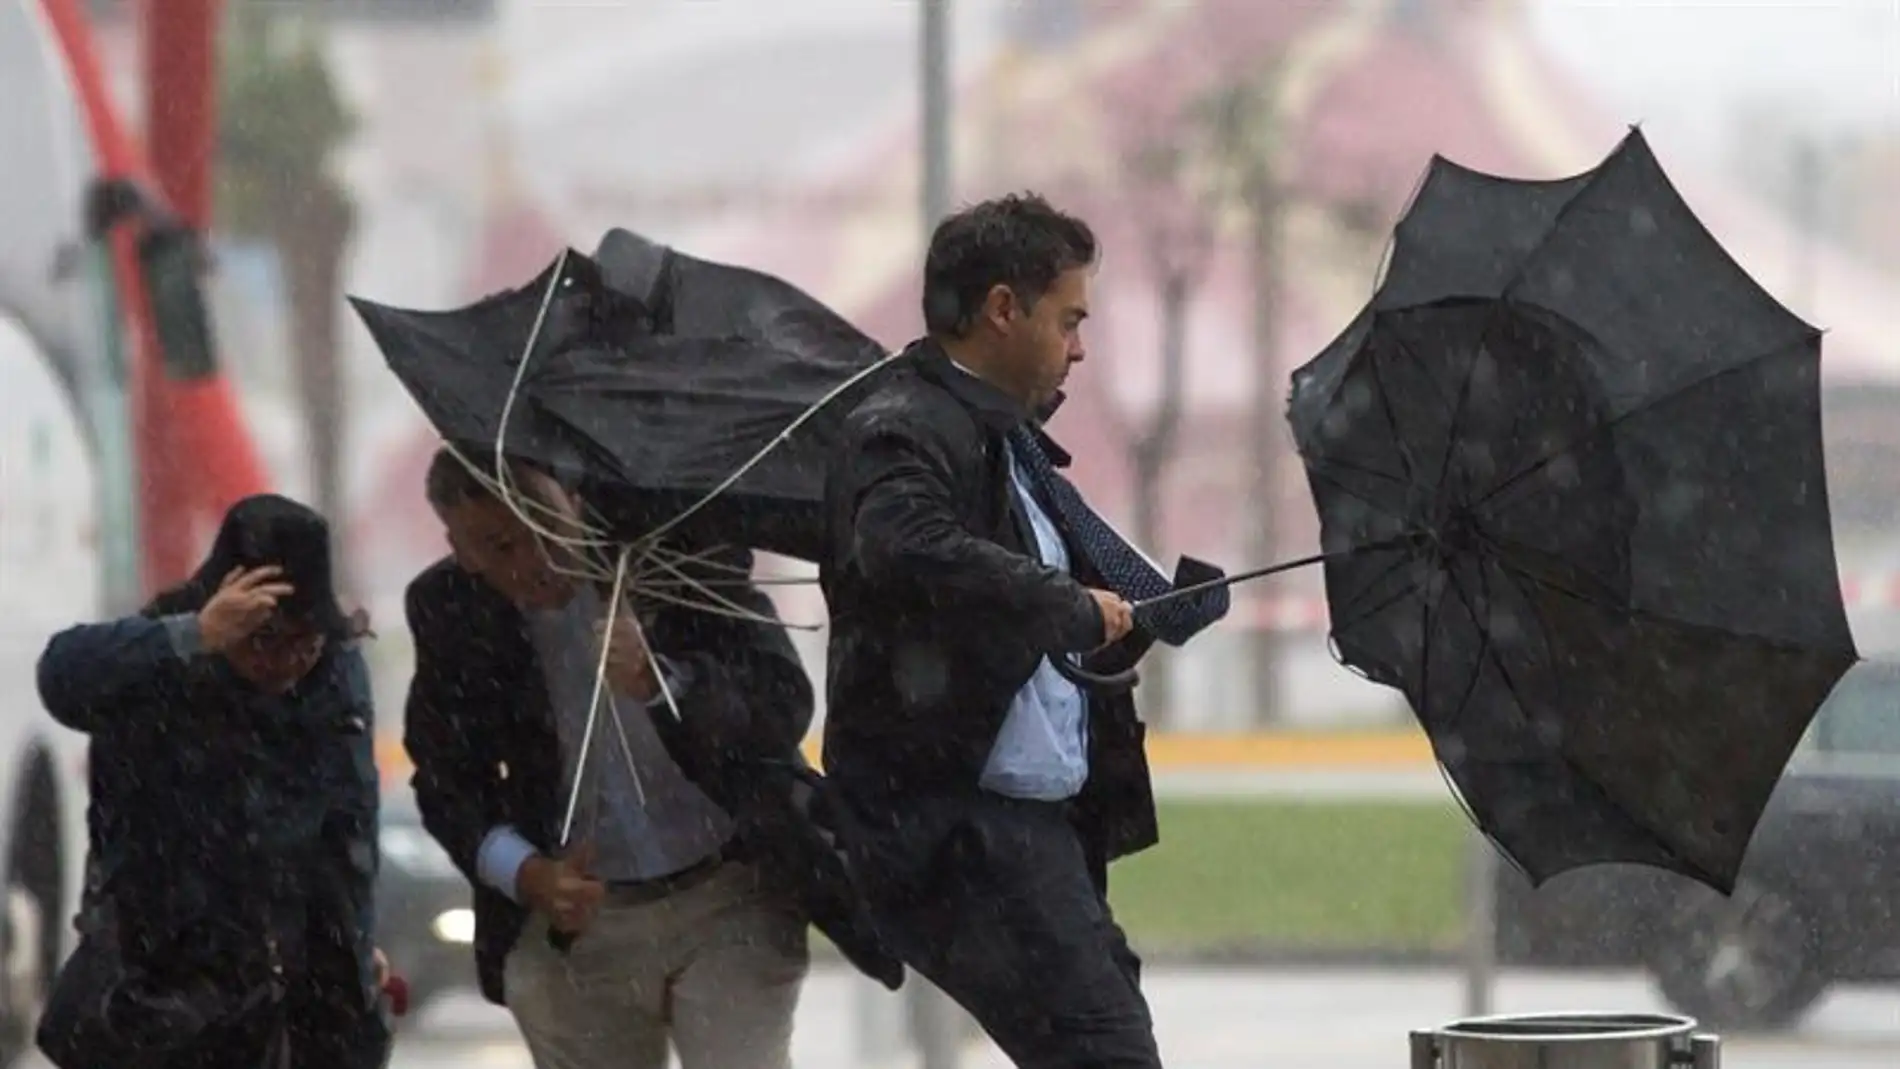 Imagen de archivo: Varias personas sujetan sus paraguas por el fuerte viento.